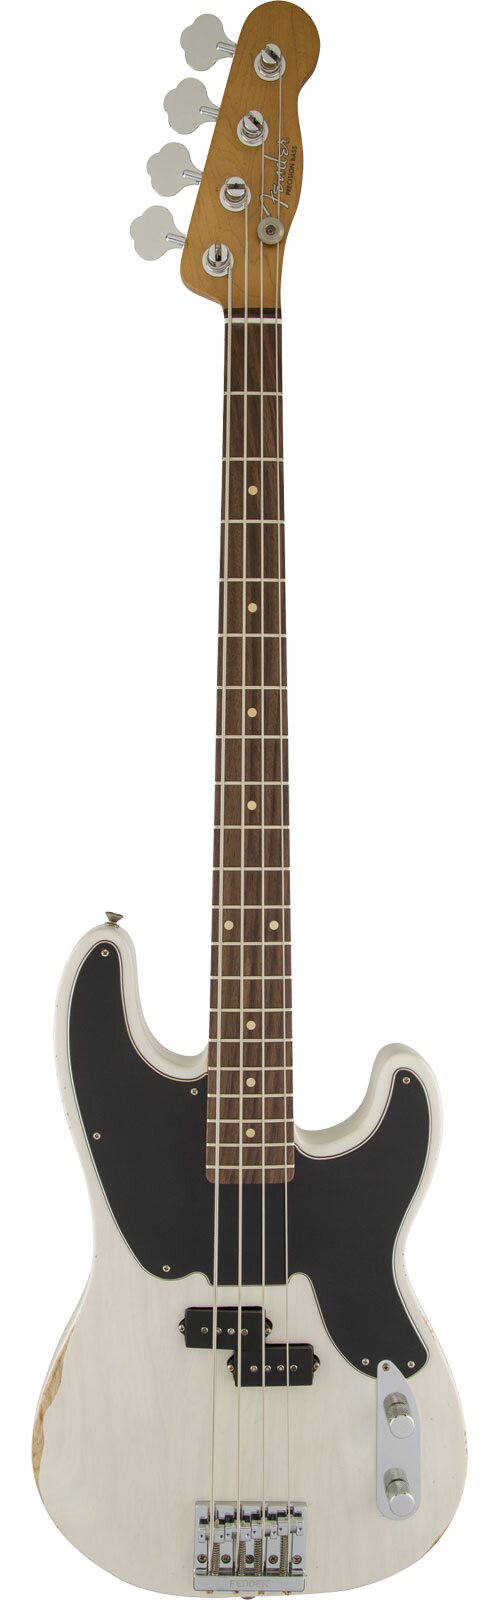 Fender Mike Dirnt Road Worn Precision Bass Palisandergriffbrett Weißblond : photo 1